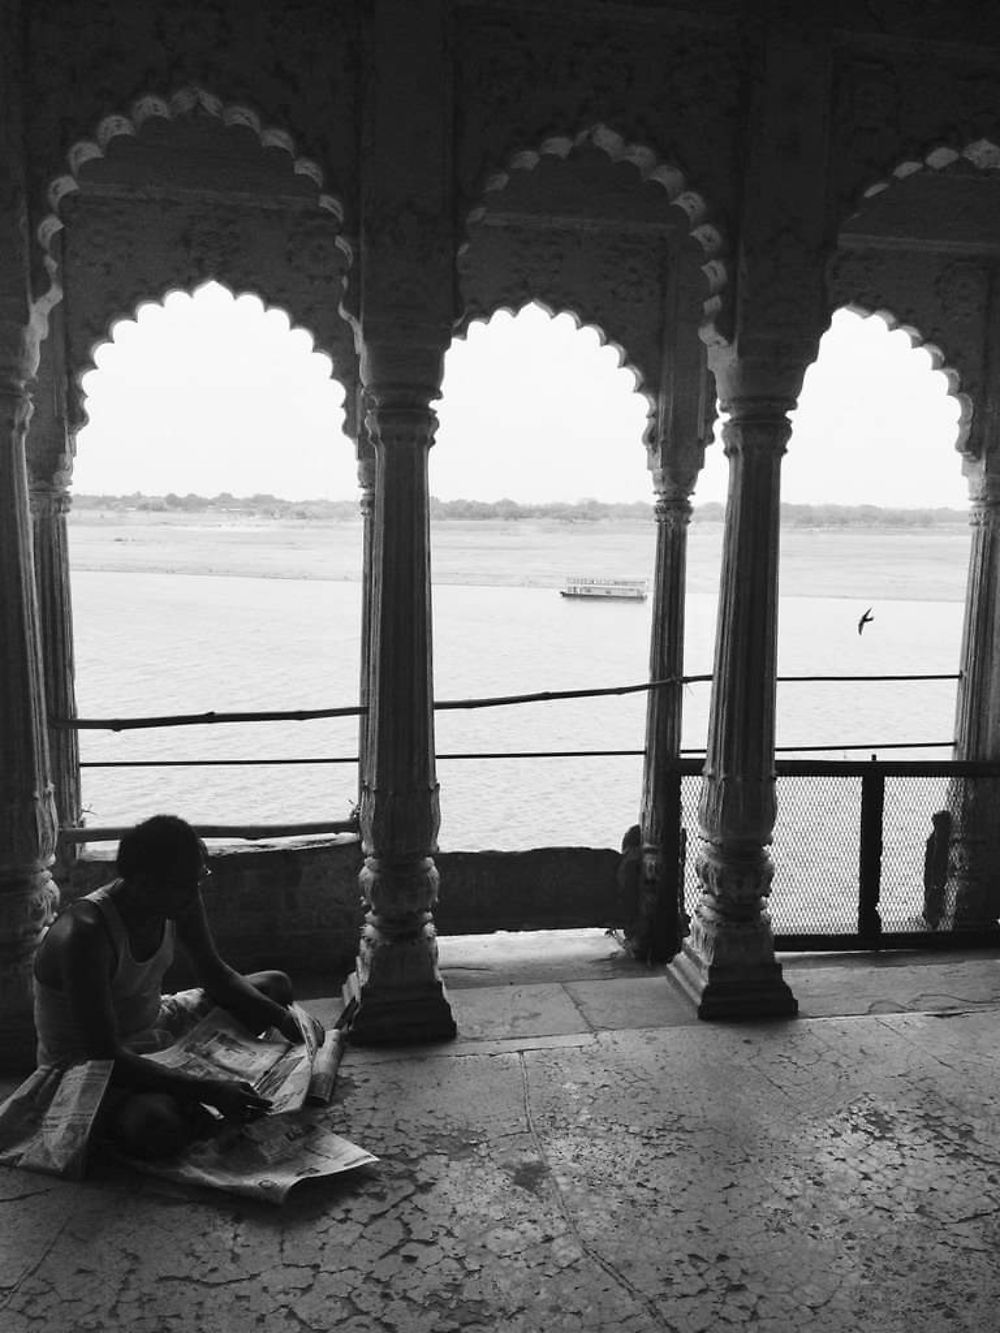 Re: Guide francophone à Varanasi (Bénarès) - Veronique-Darsigny